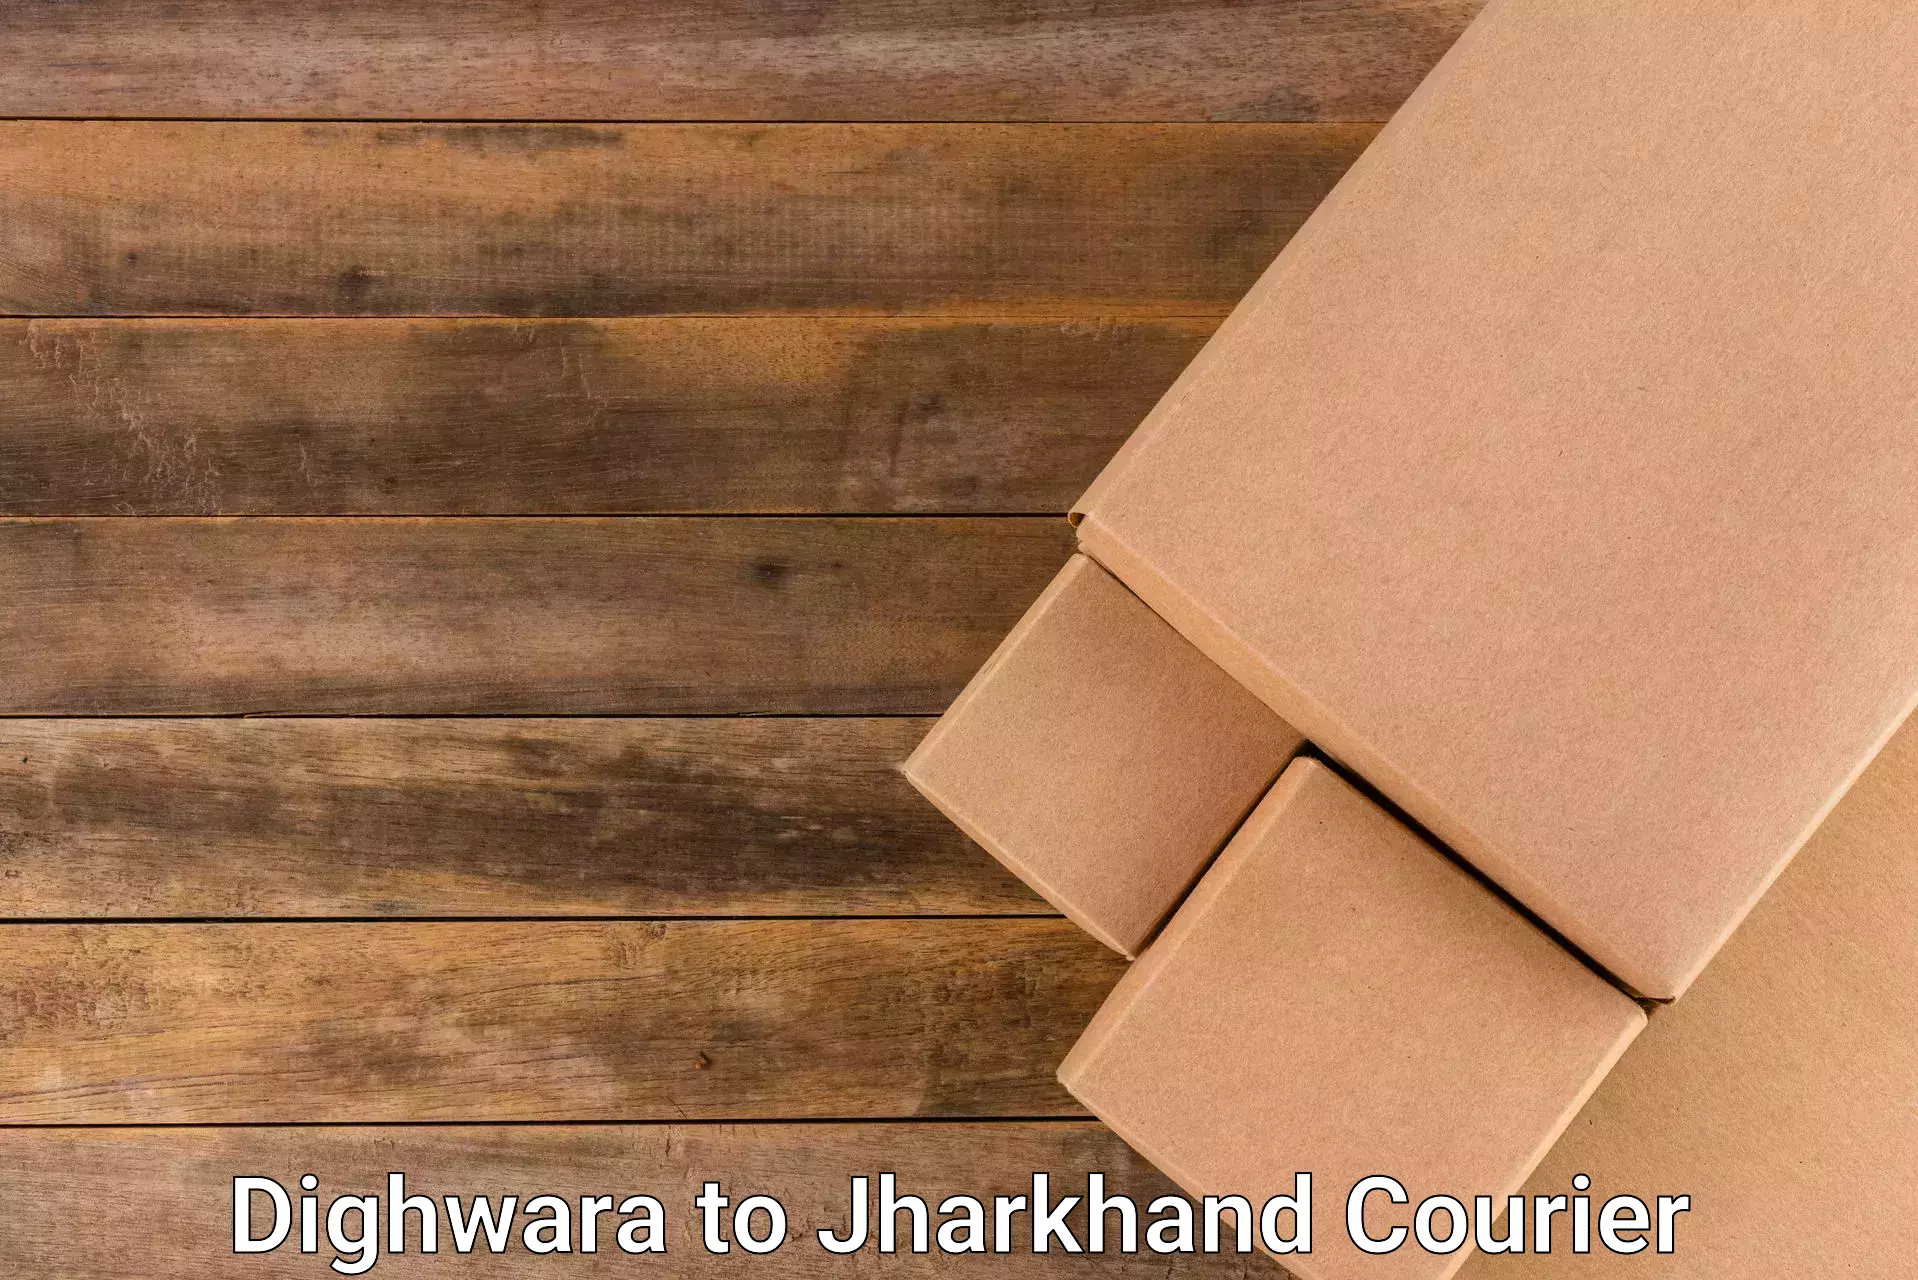 Retail shipping solutions in Dighwara to Chandankiyari